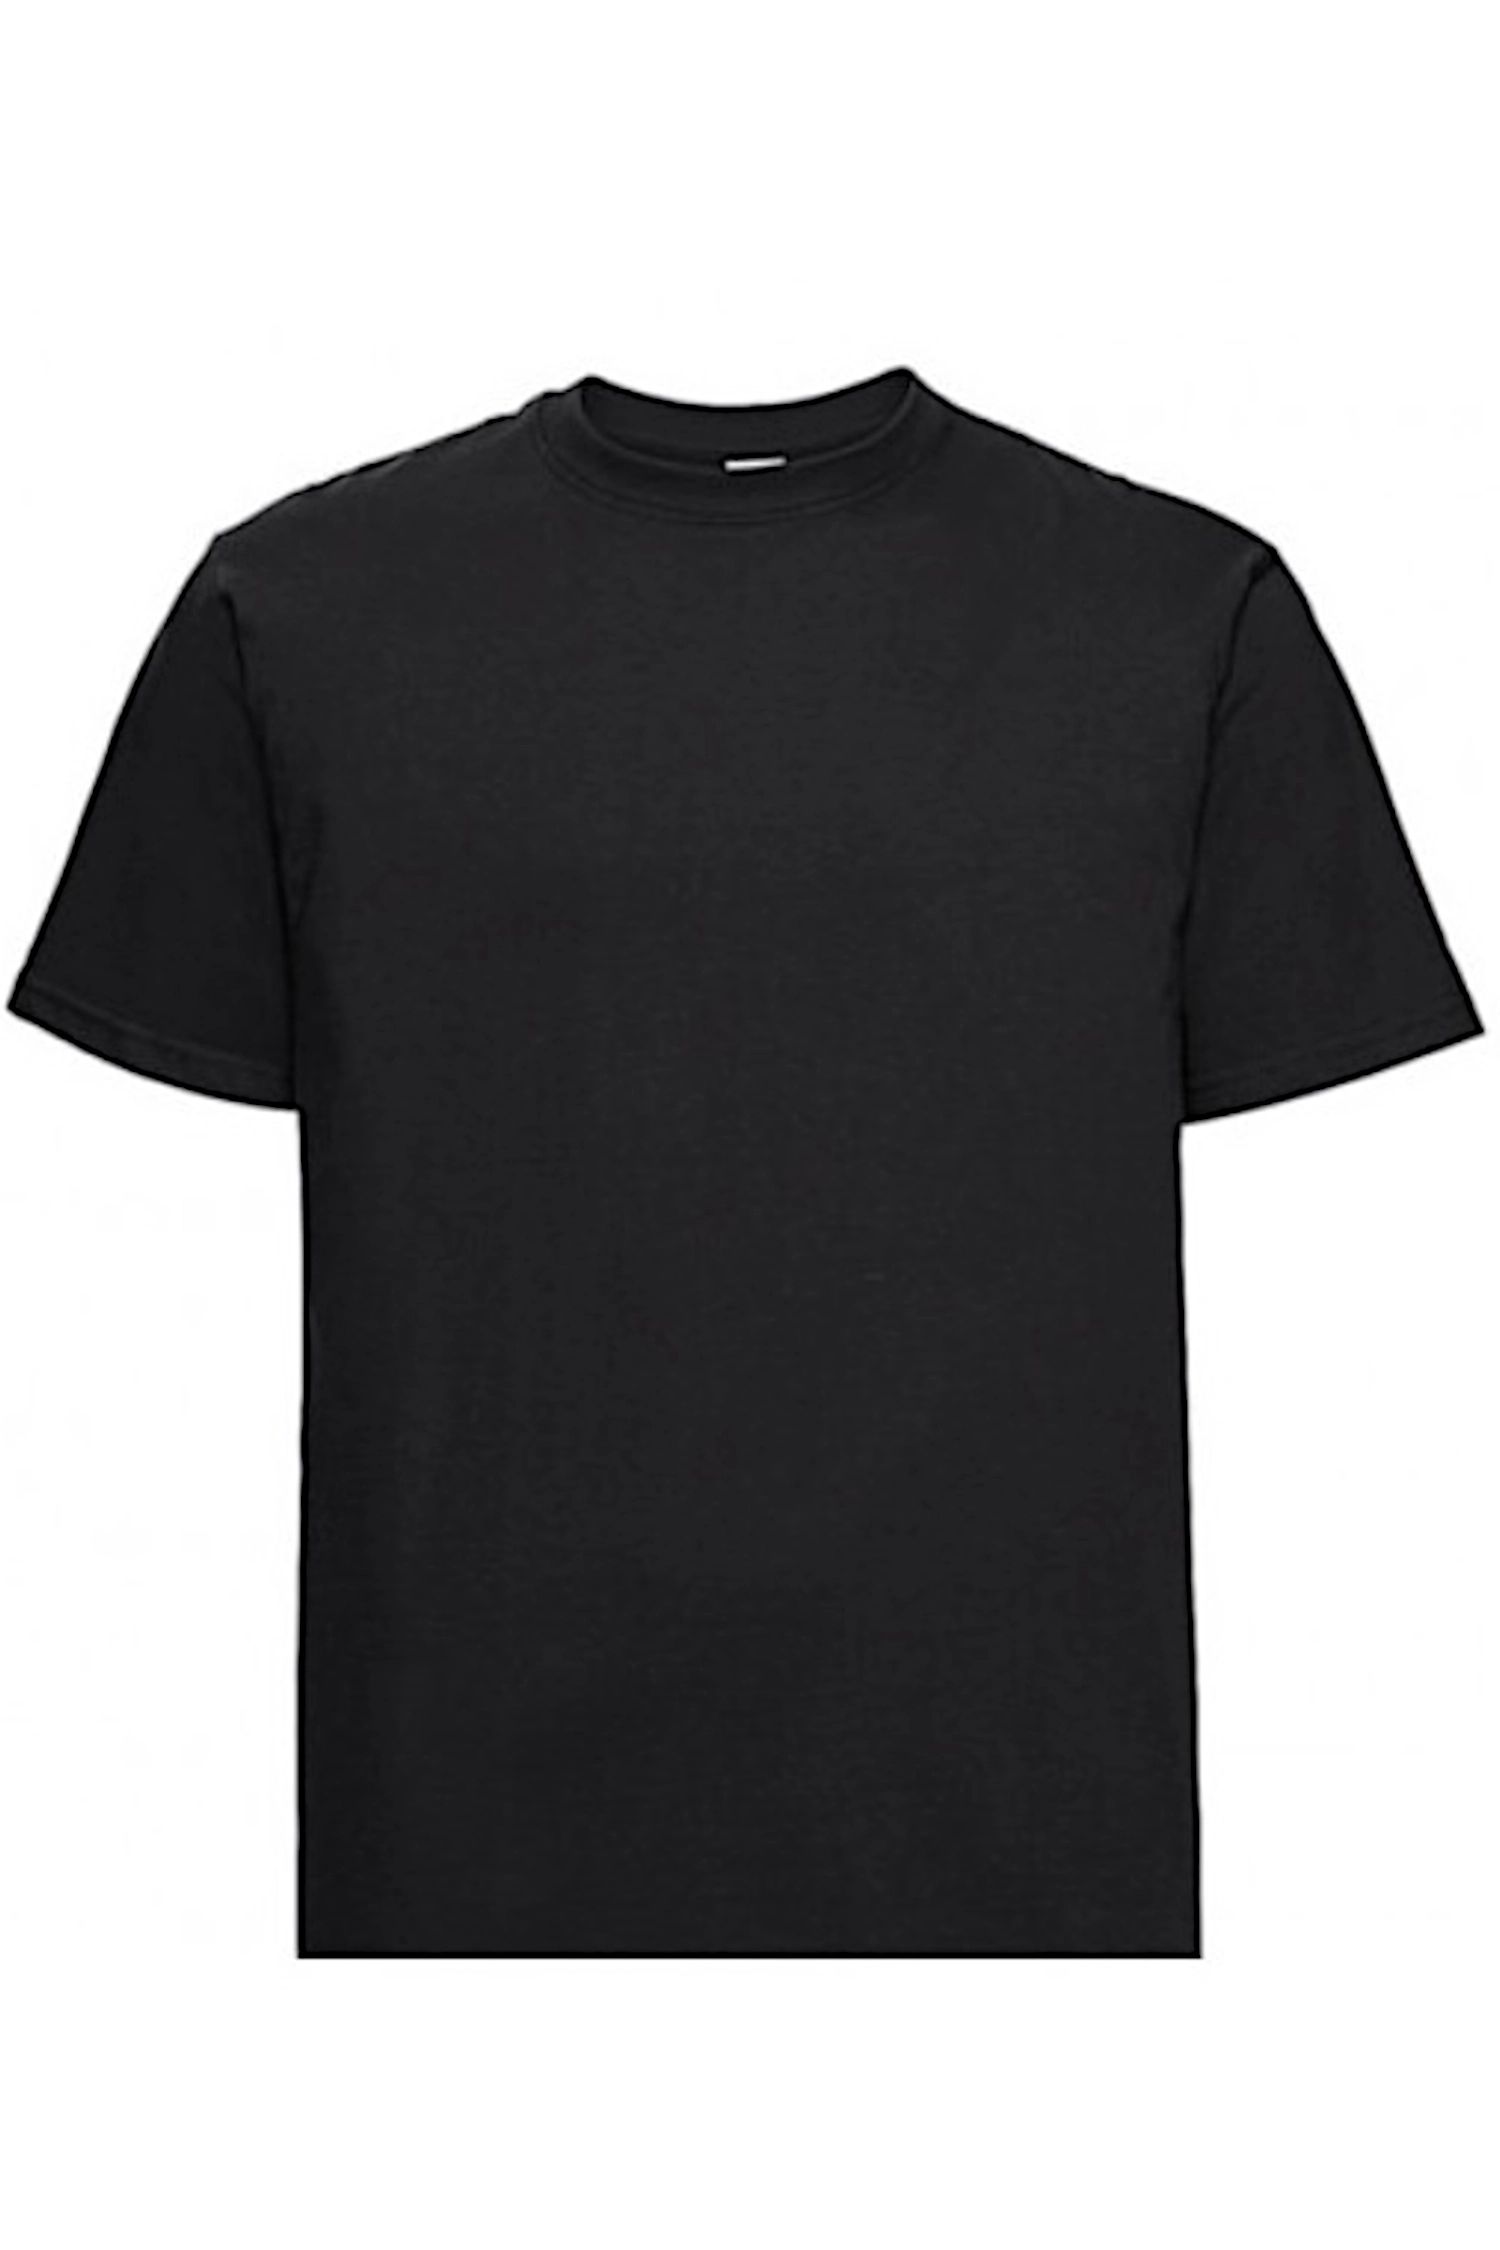 E-shop Pánske tričko 002 black